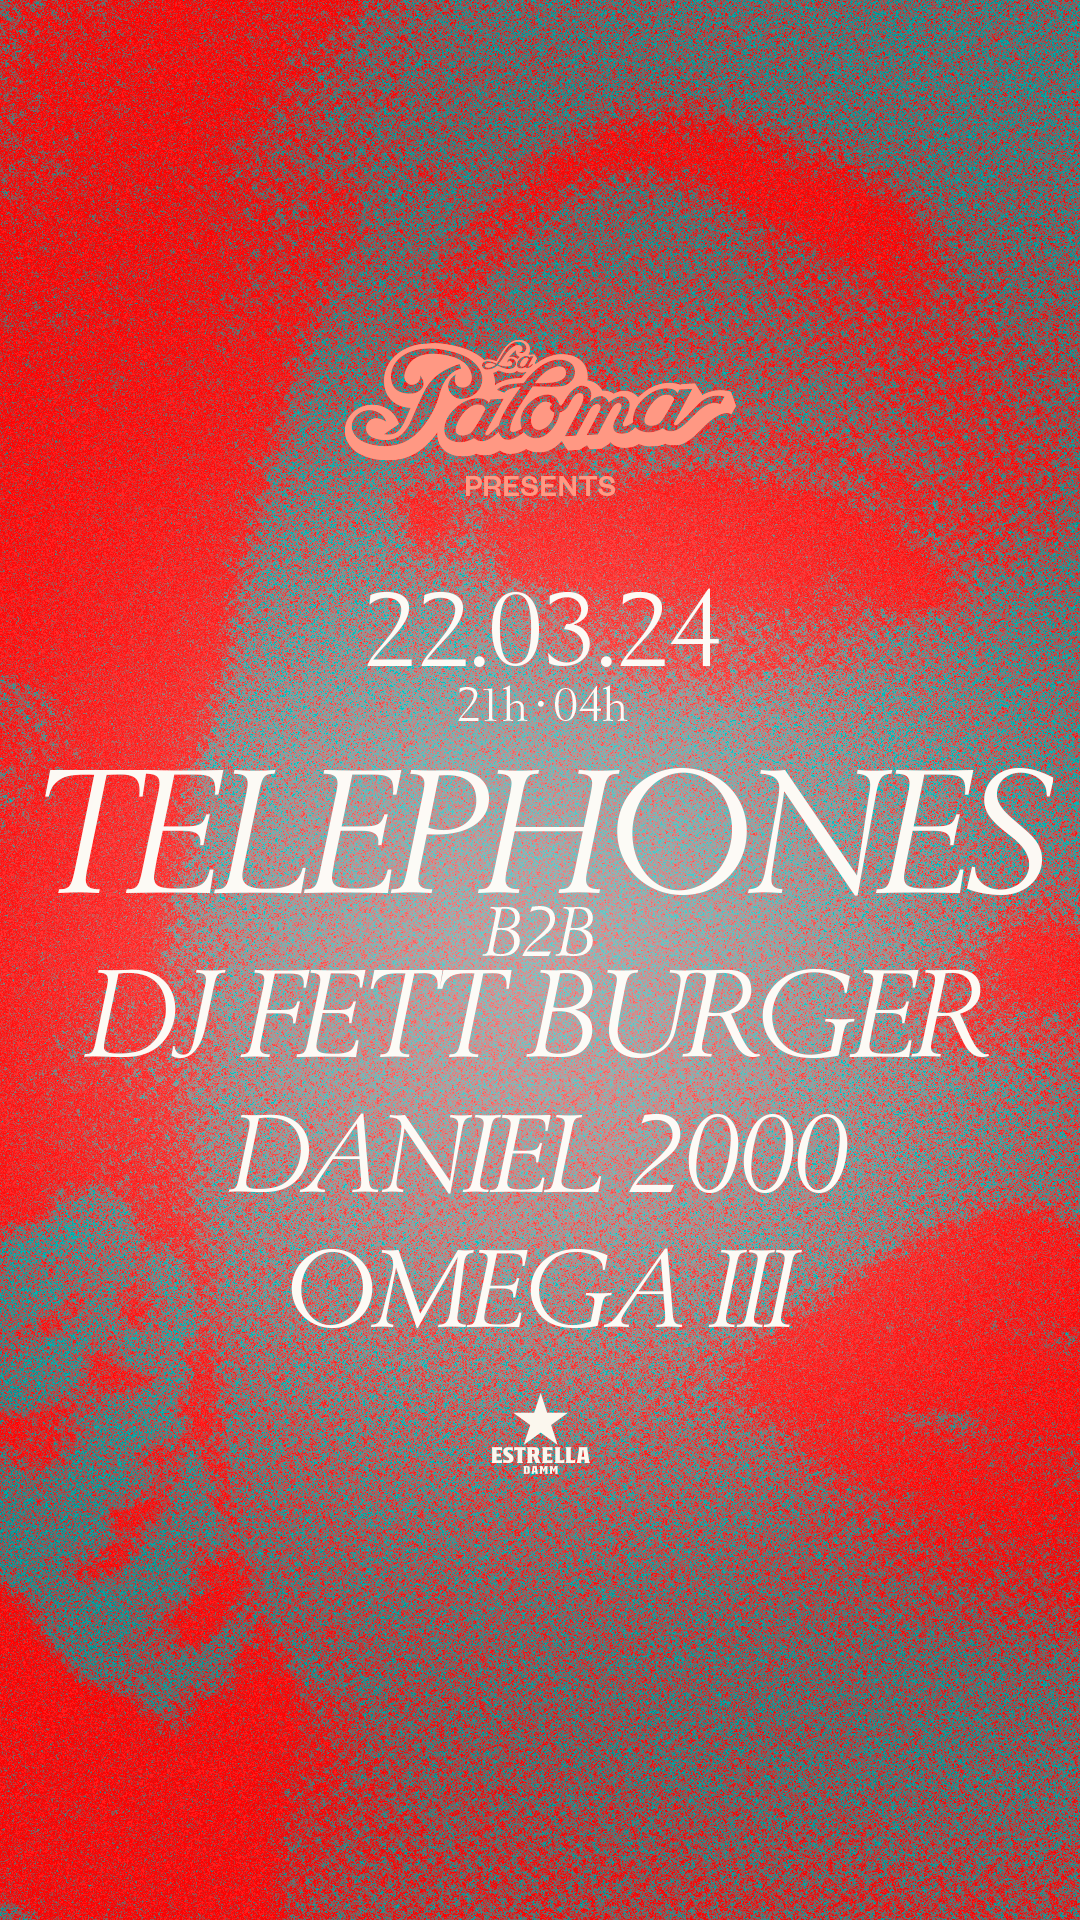 La Paloma presents: Telephones B2B DJ Fett Burger, Daniel 2000, Omega III - Página trasera